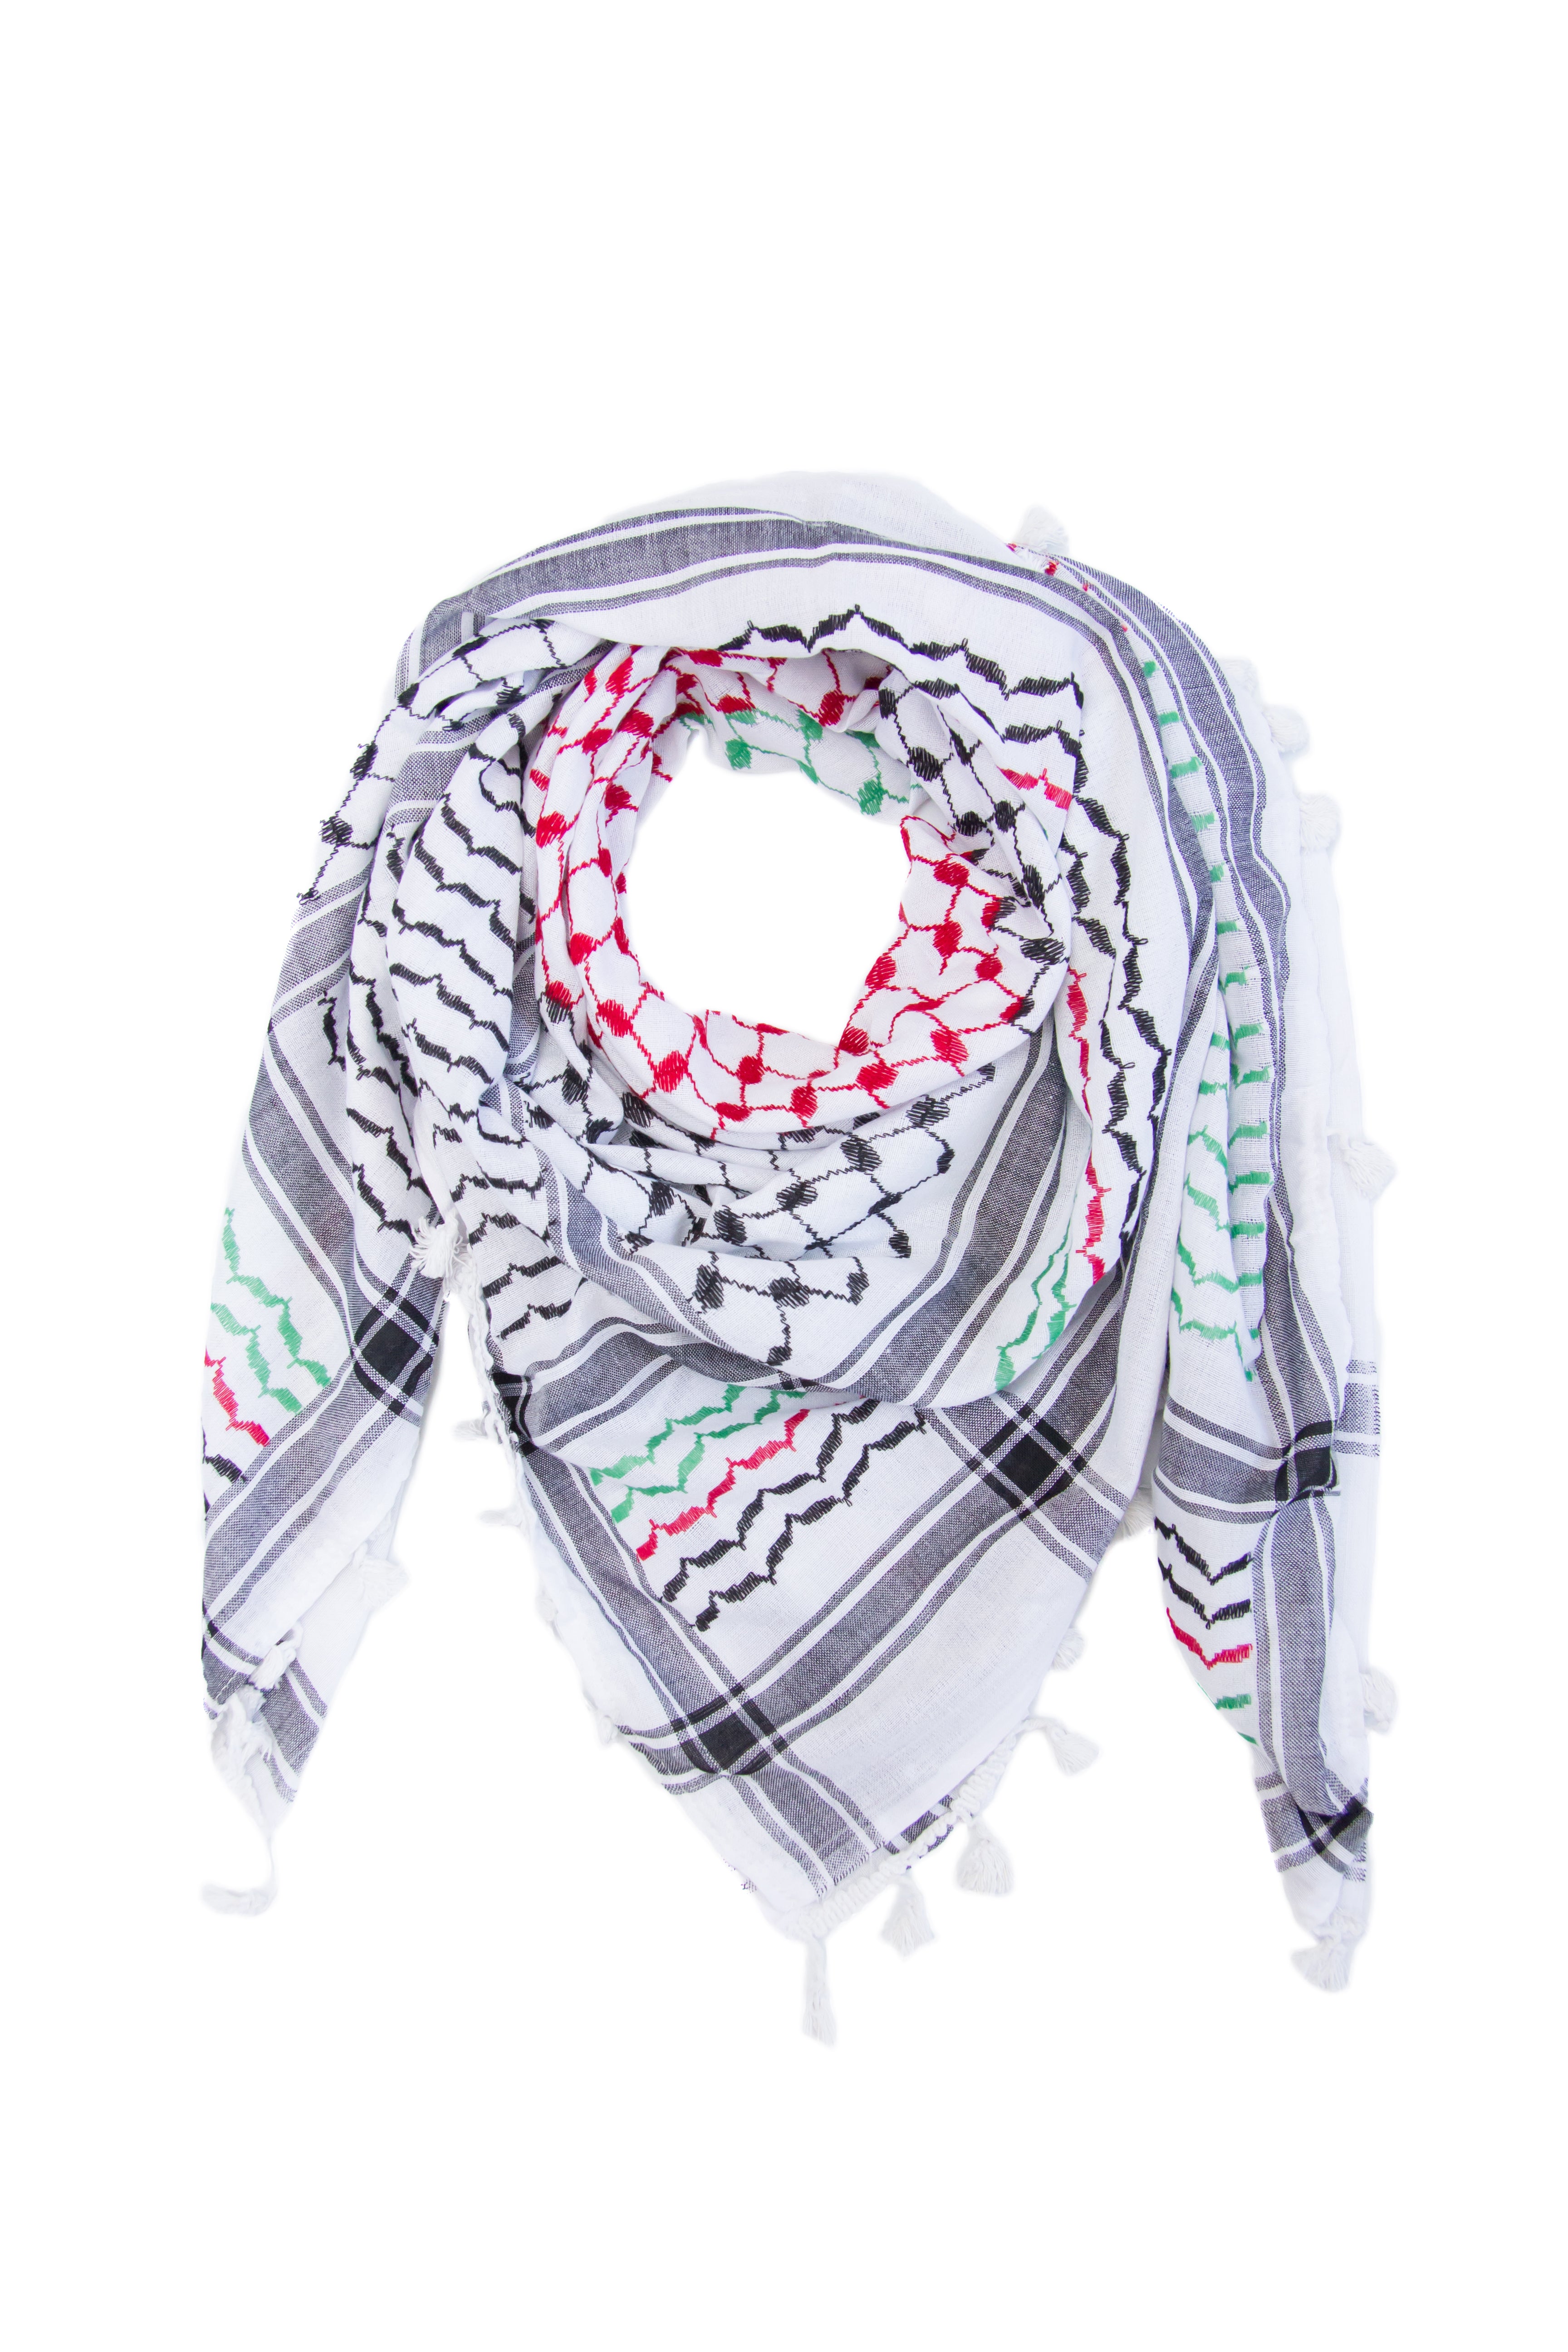 Palestinian Flag - HirbawiUSA